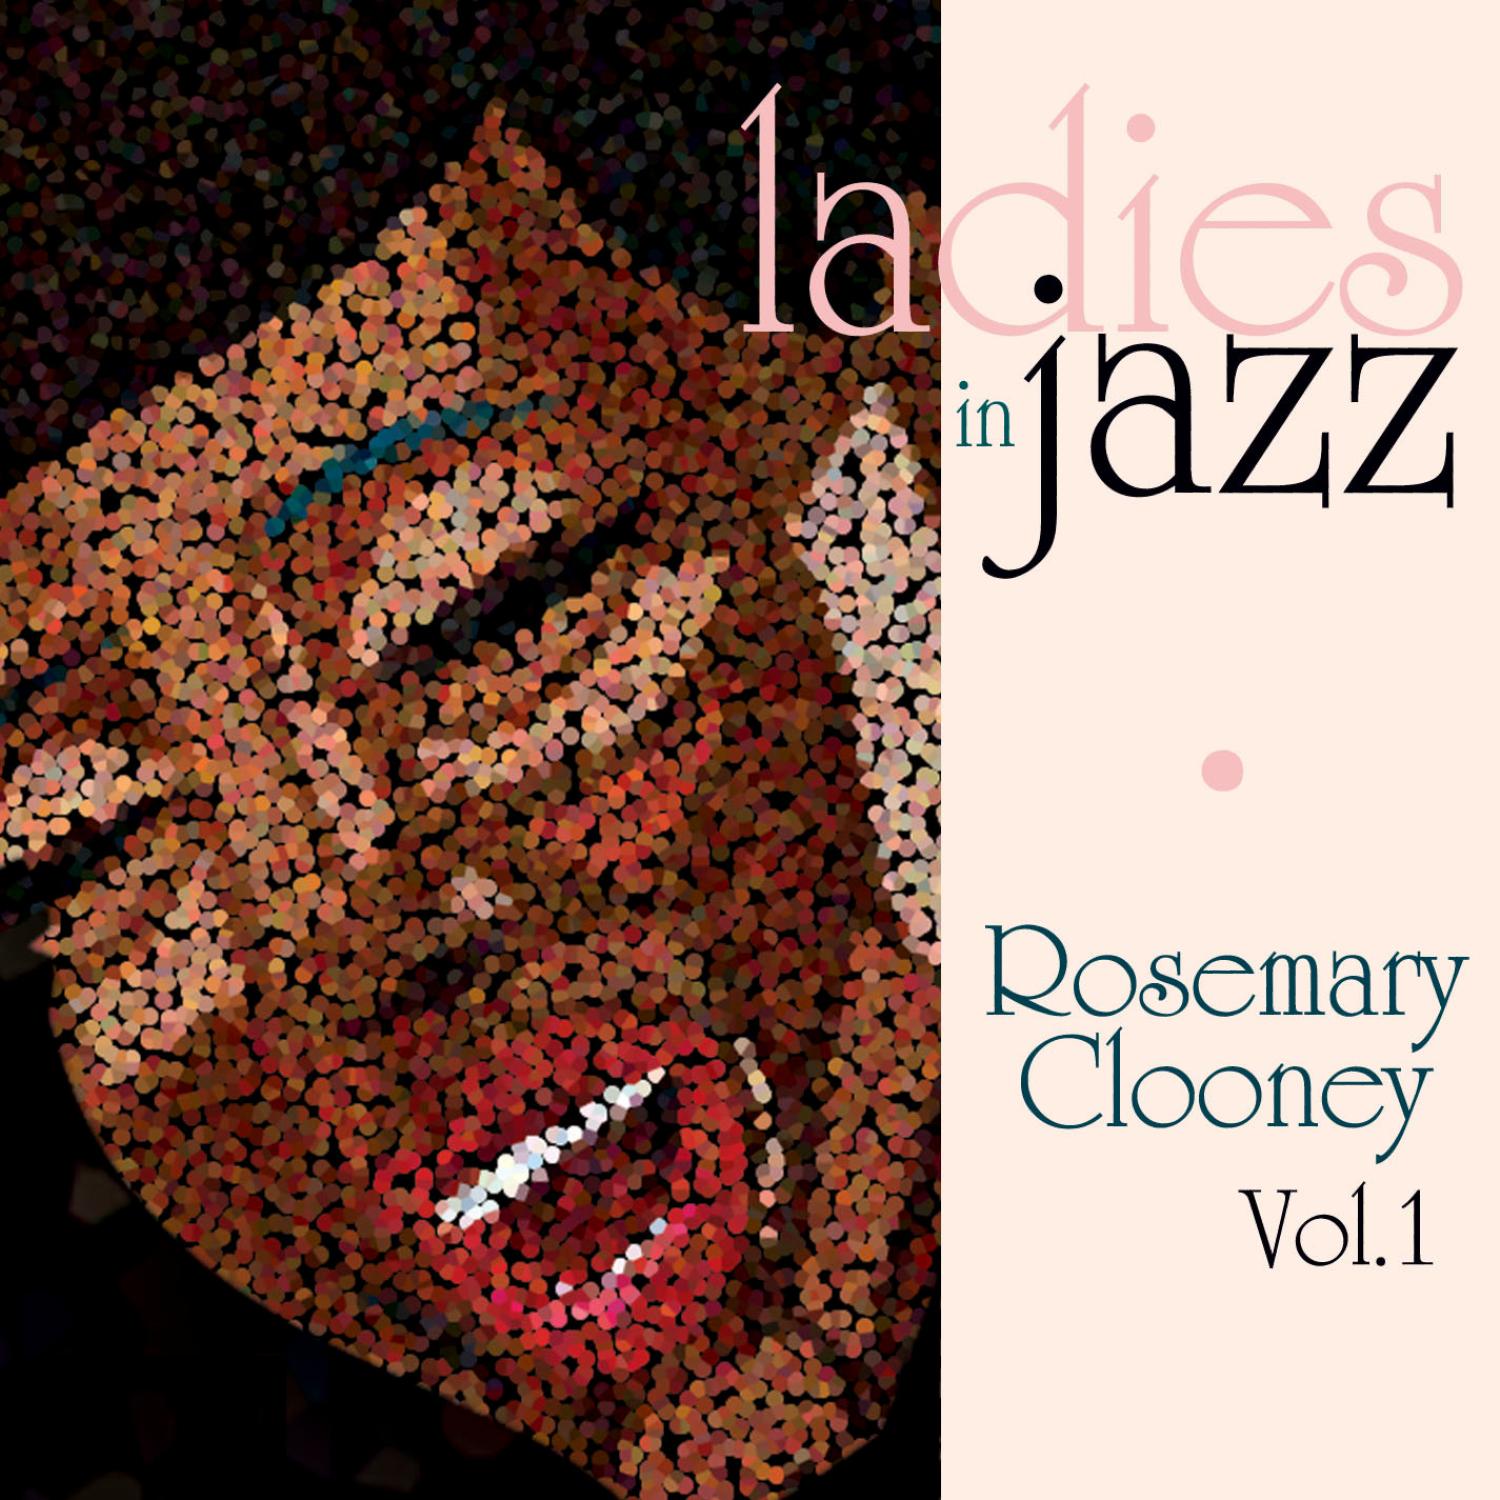 Ladies in Jazz - Rosemary Clooney Vol. 1